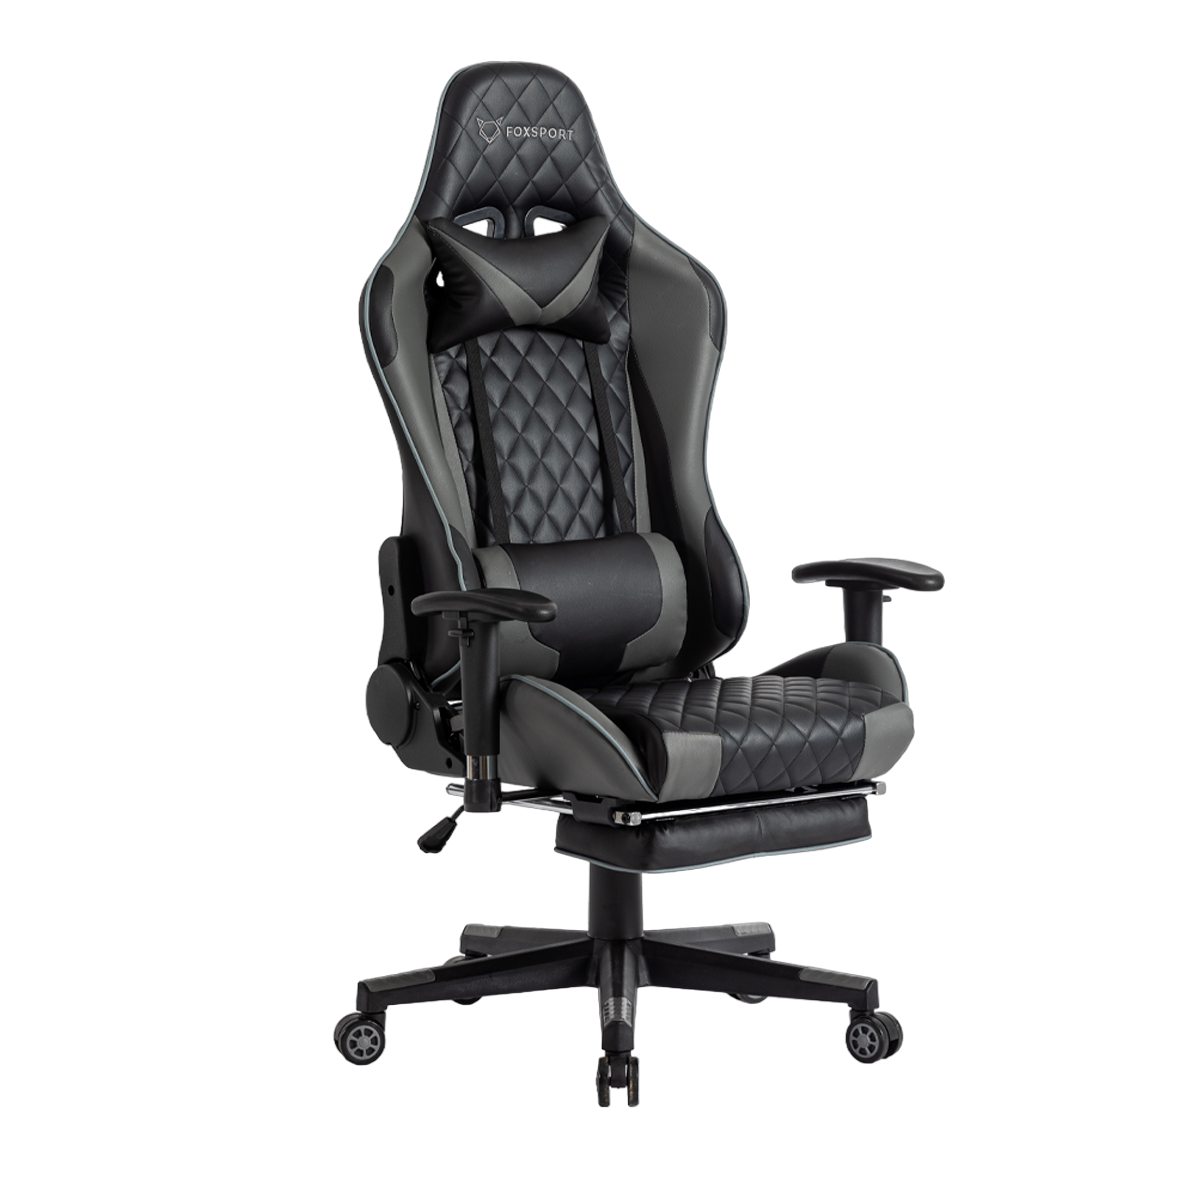 FOXSPORT Stuhl mit Beinstütze Schwarz schwarz Gaming-Stuhl